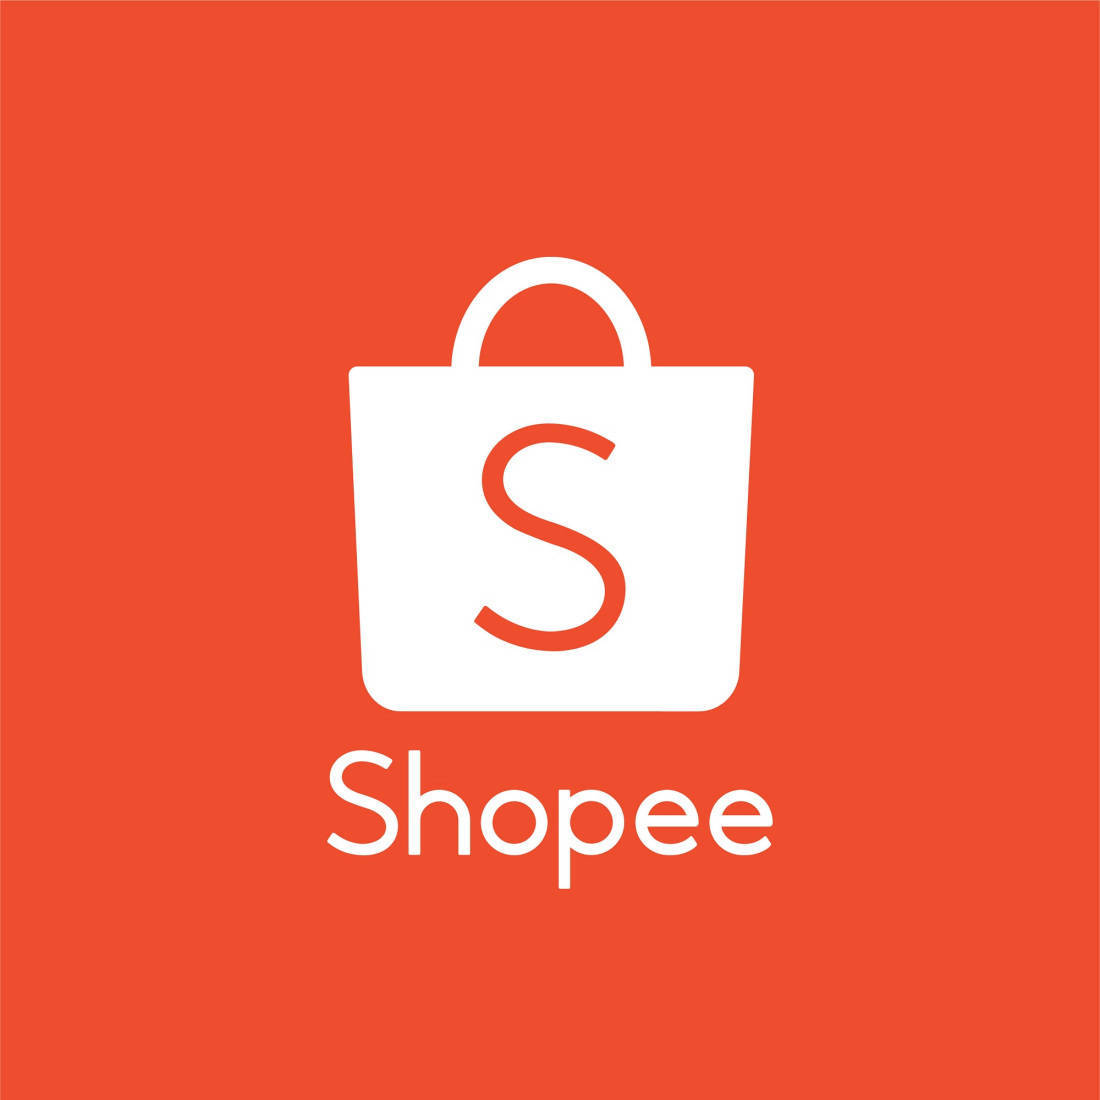 Shopee与亚马逊的区别是什么？